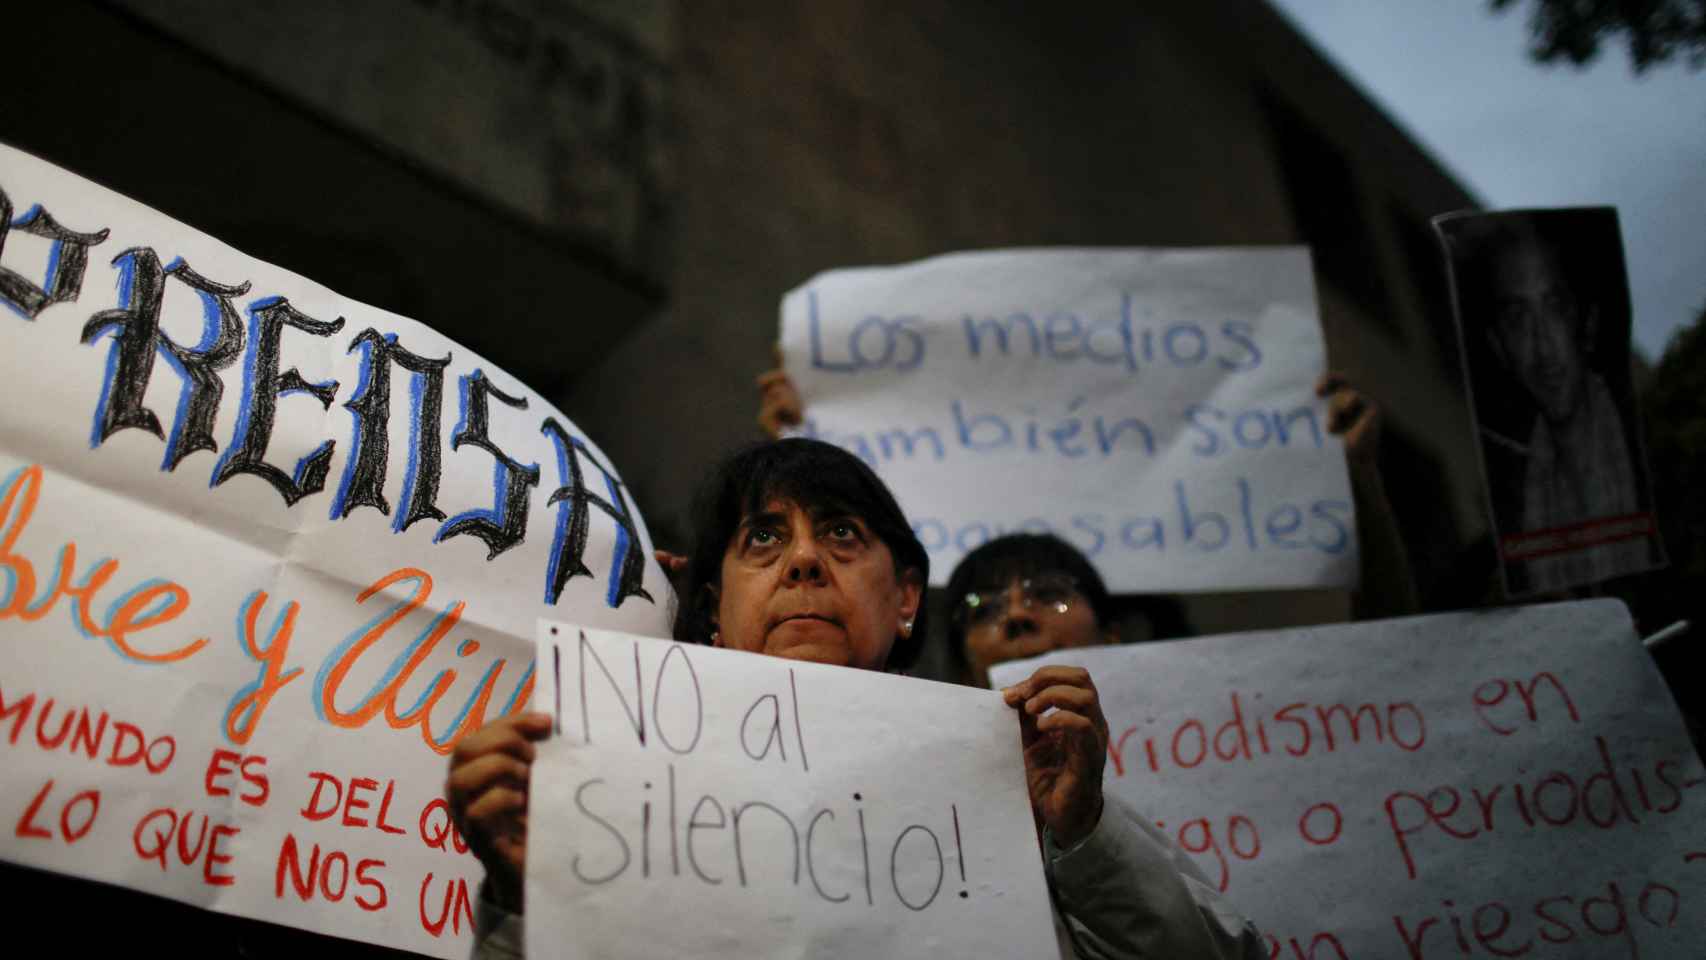 Un cartel reza ¡No al silencio! en la manifestación tras la muerte del periodista mexicano Luis Martín Sánchez.